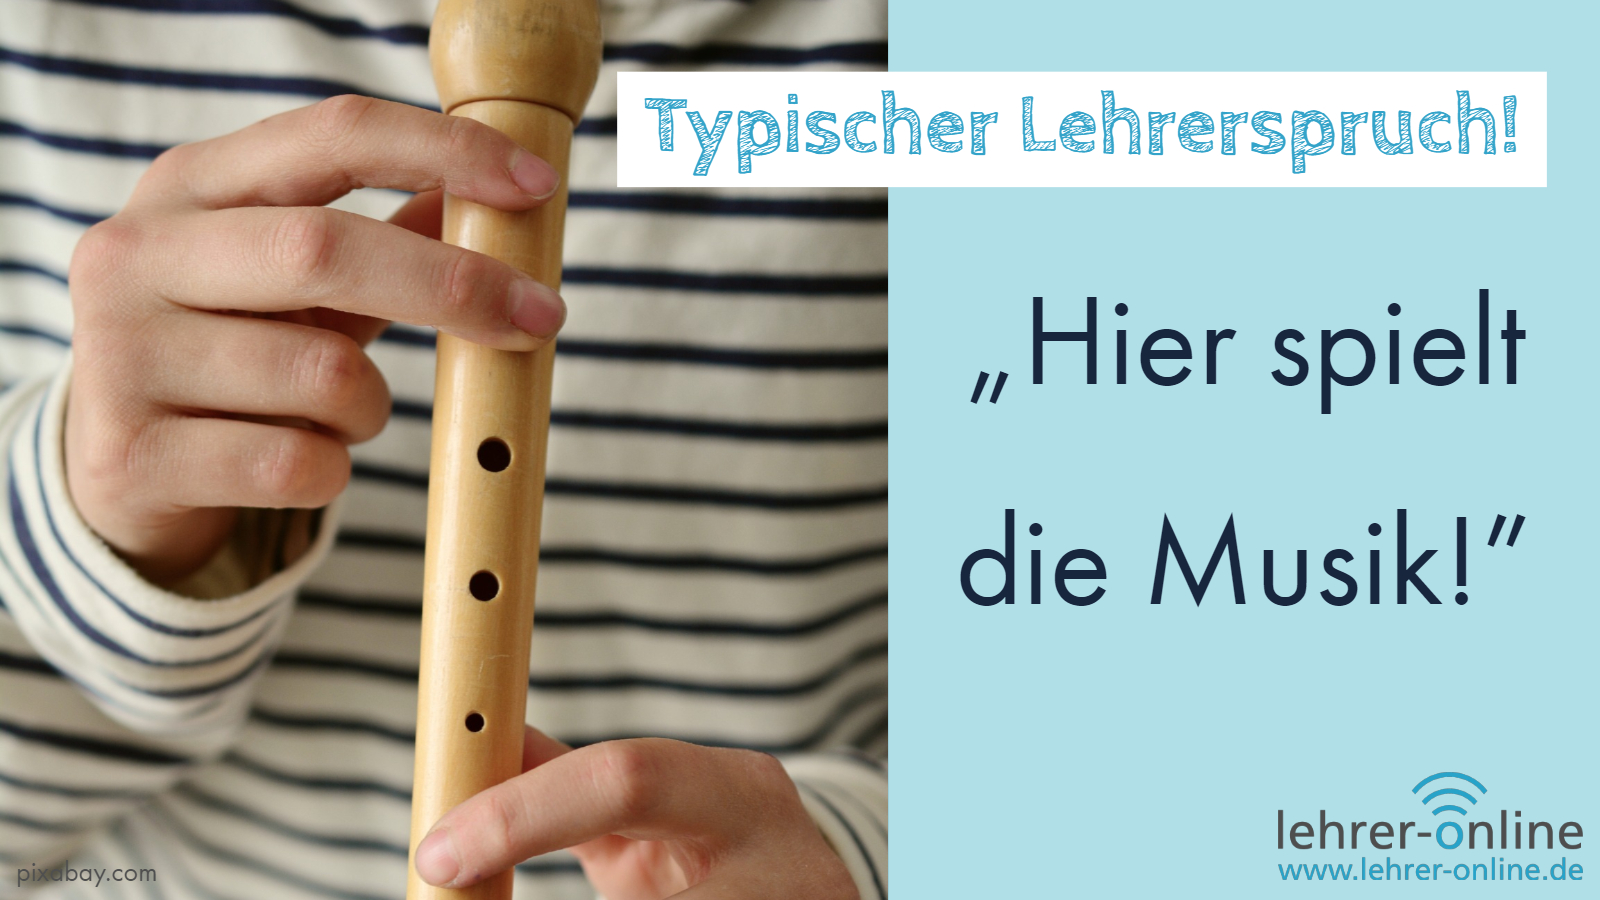 Kind spielt Flöte; Text im Bild: Typischer Lehrerspruch: "Hier spielt die Musik!"